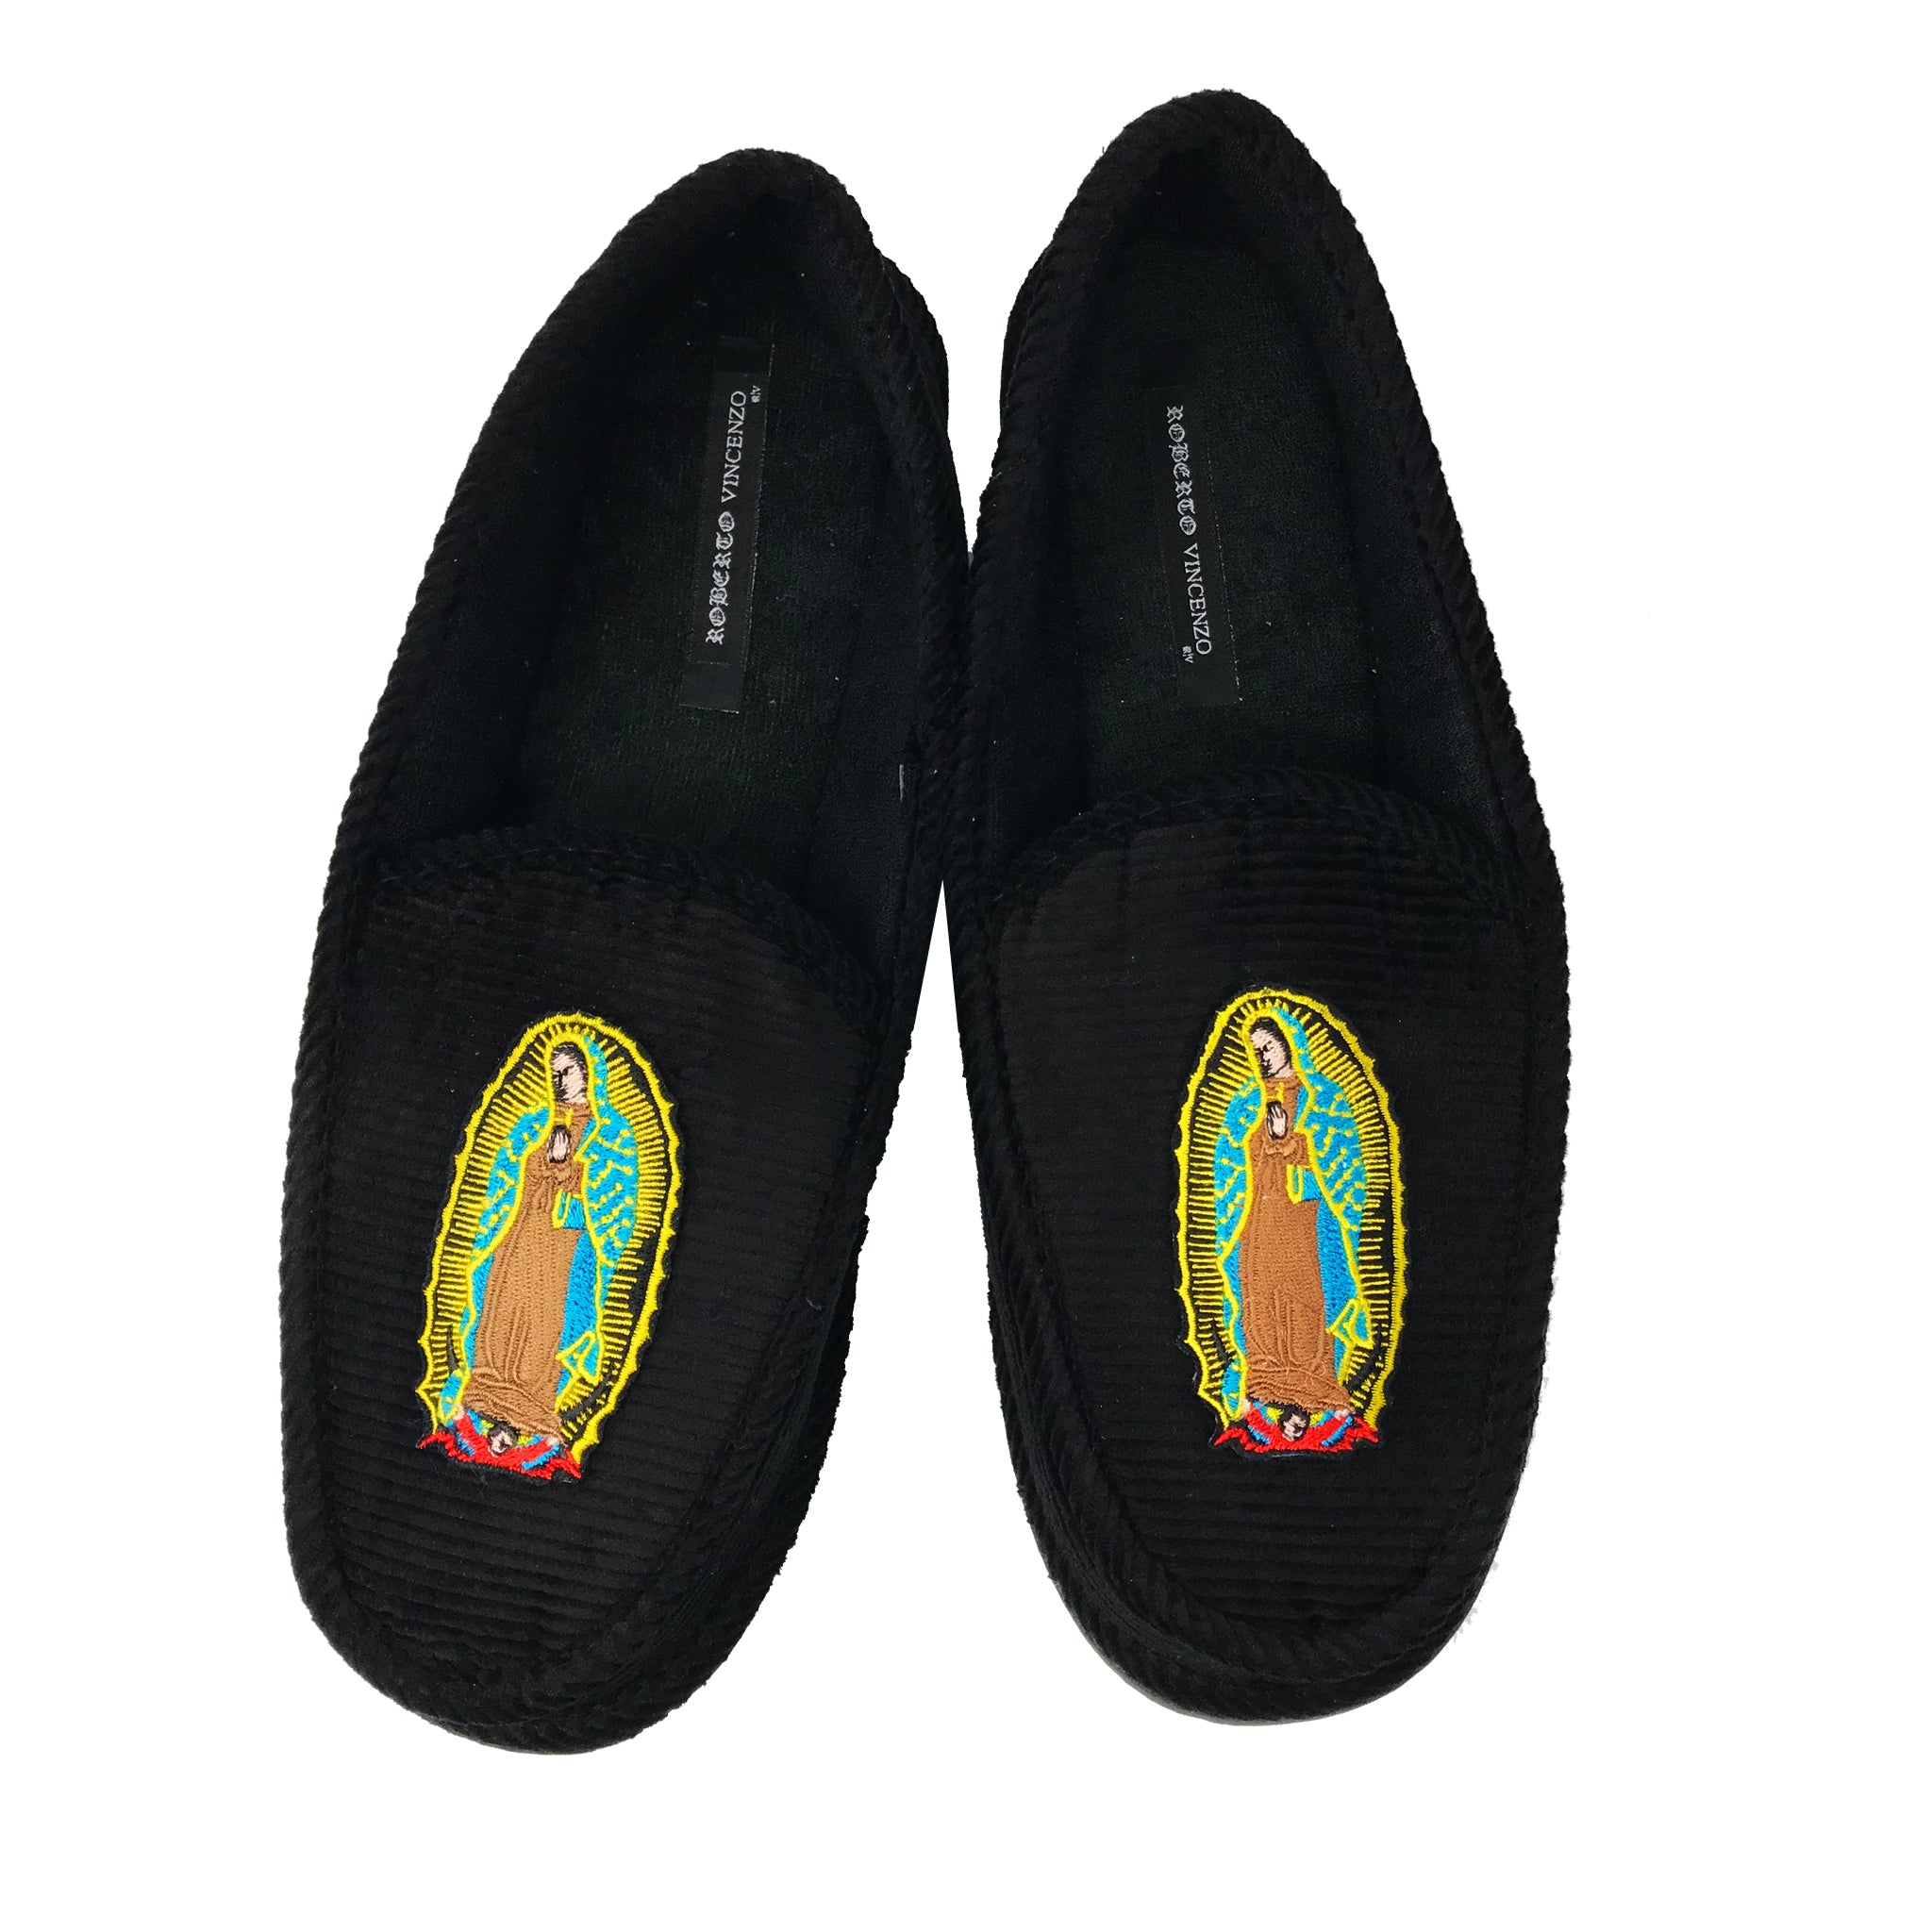 O.G. Virgin Marry slippers